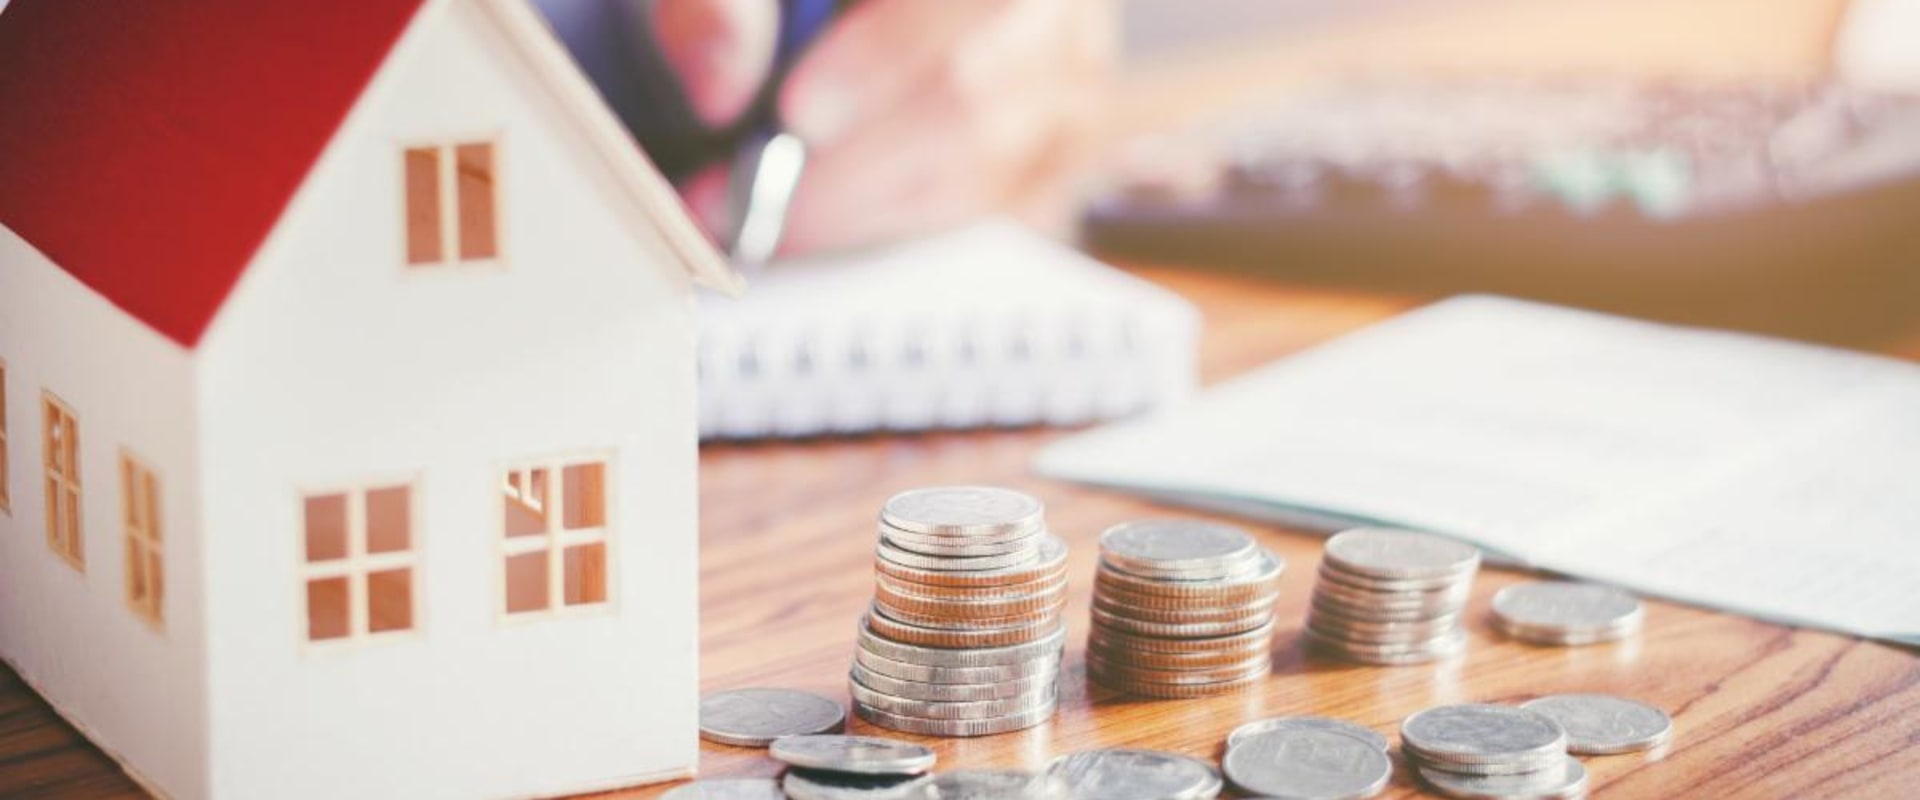 Building Loans: Understanding Home Financing